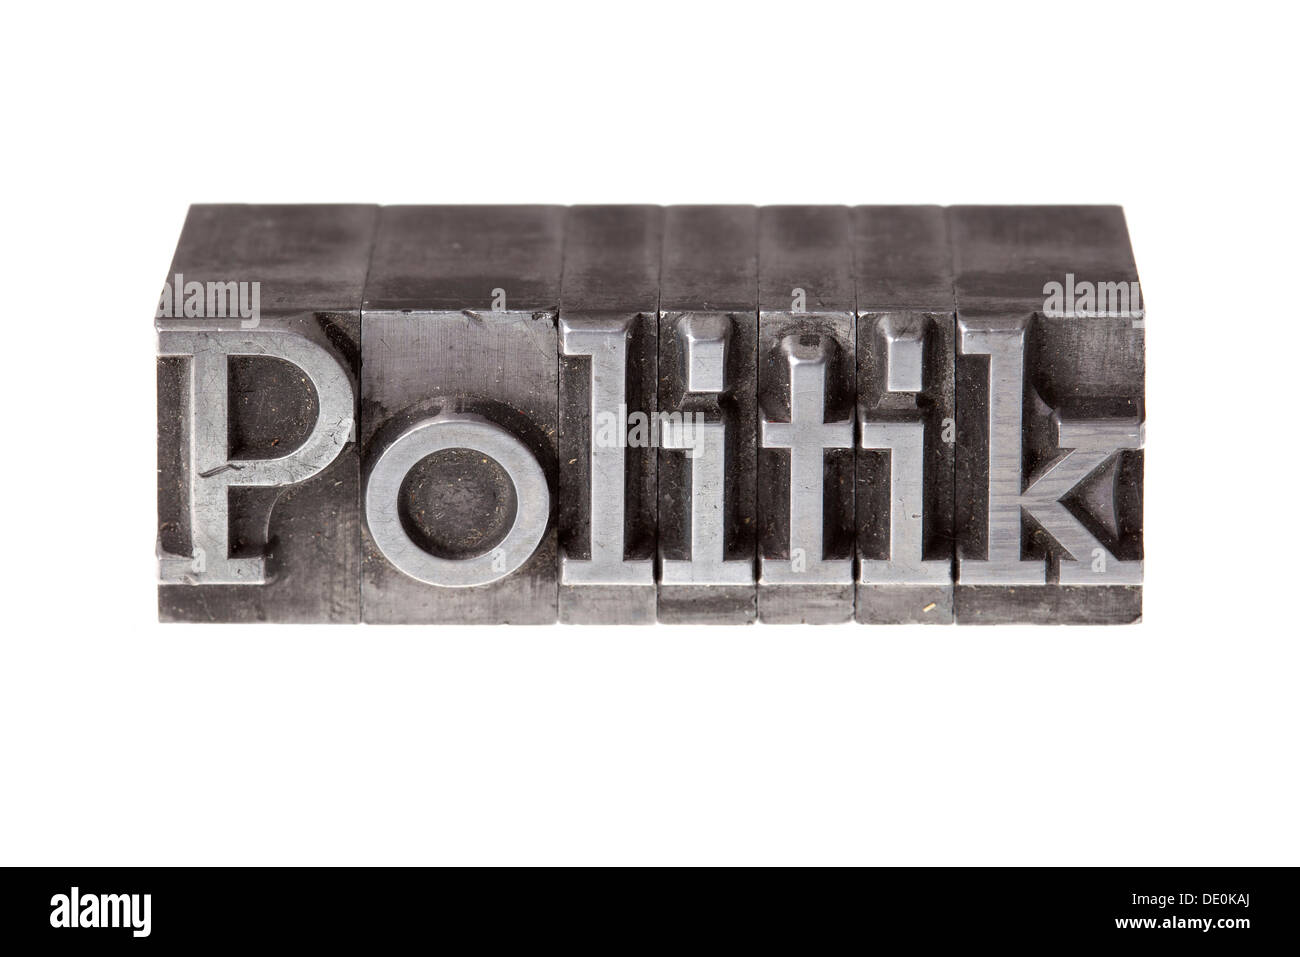 Vecchio portano lettere che compongono la parola "Politik", Tedesco per la politica Foto Stock